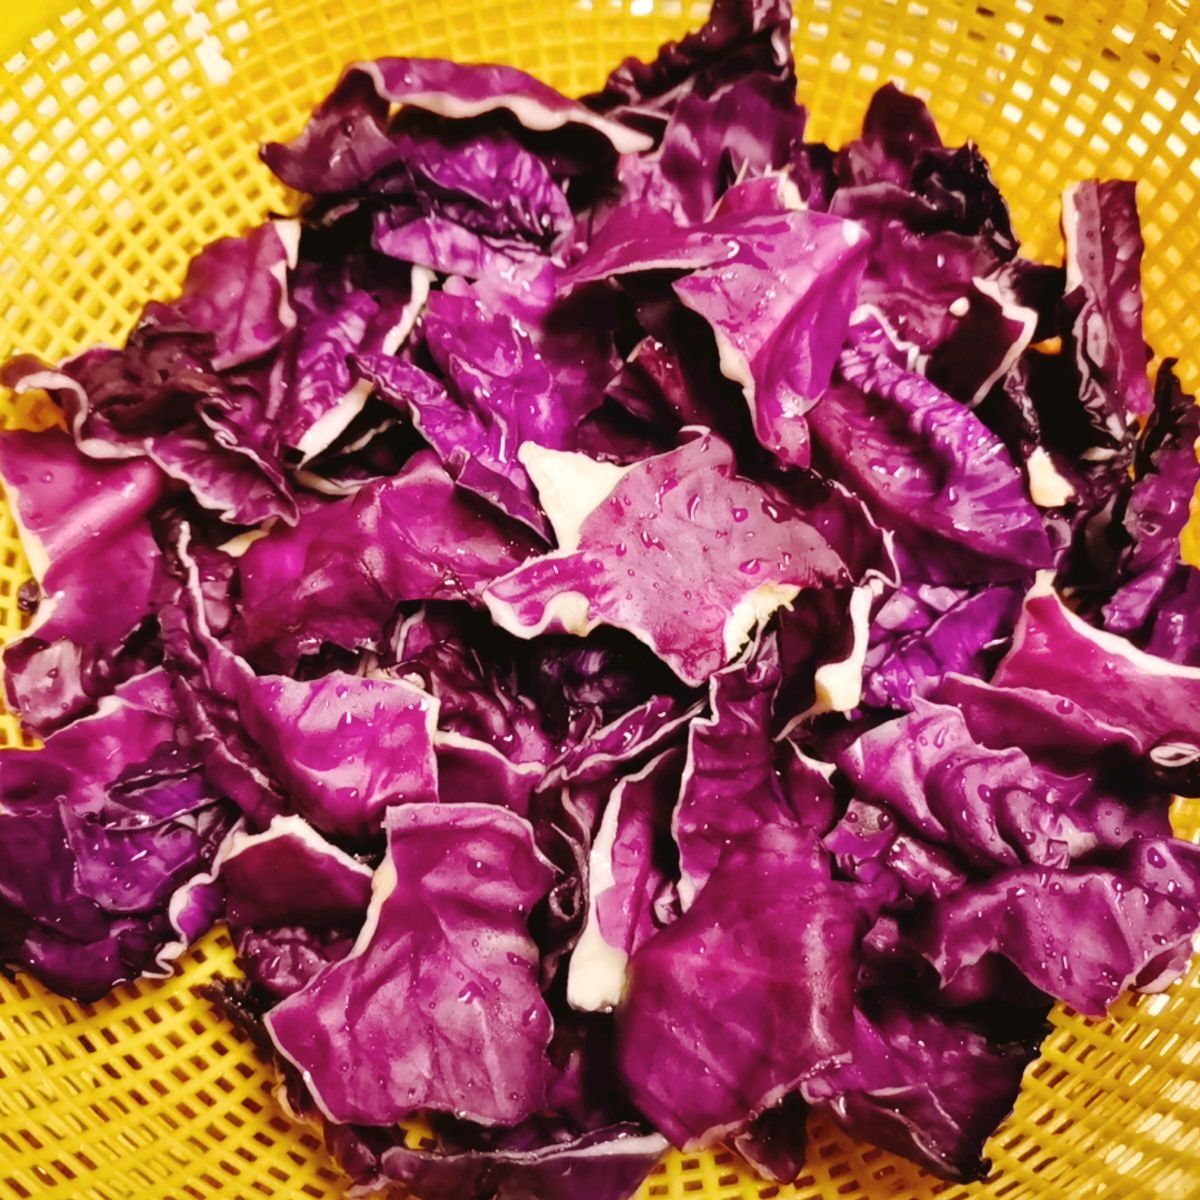 紫甘蓝图片_的紫甘蓝图片大全 - 花卉网